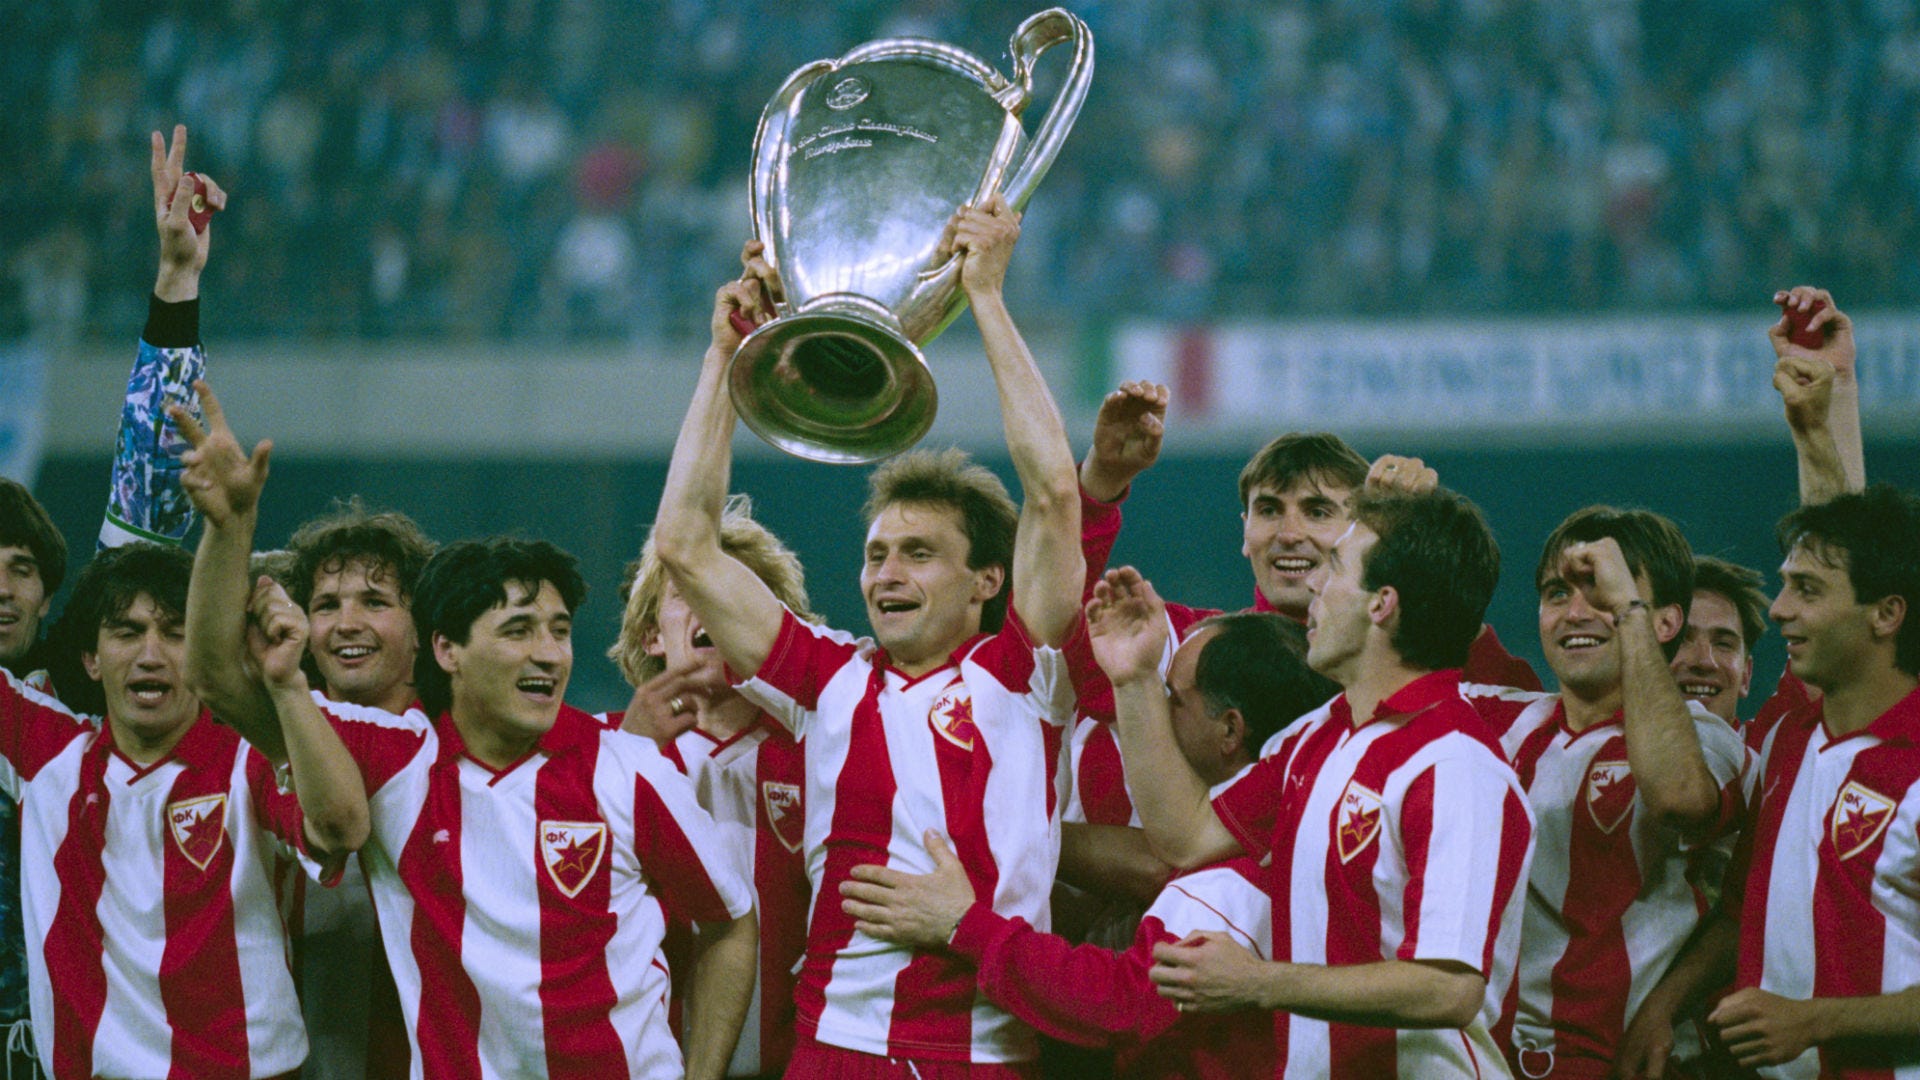 1990/91: Estrela Vermelha conquista Europa, UEFA Champions League